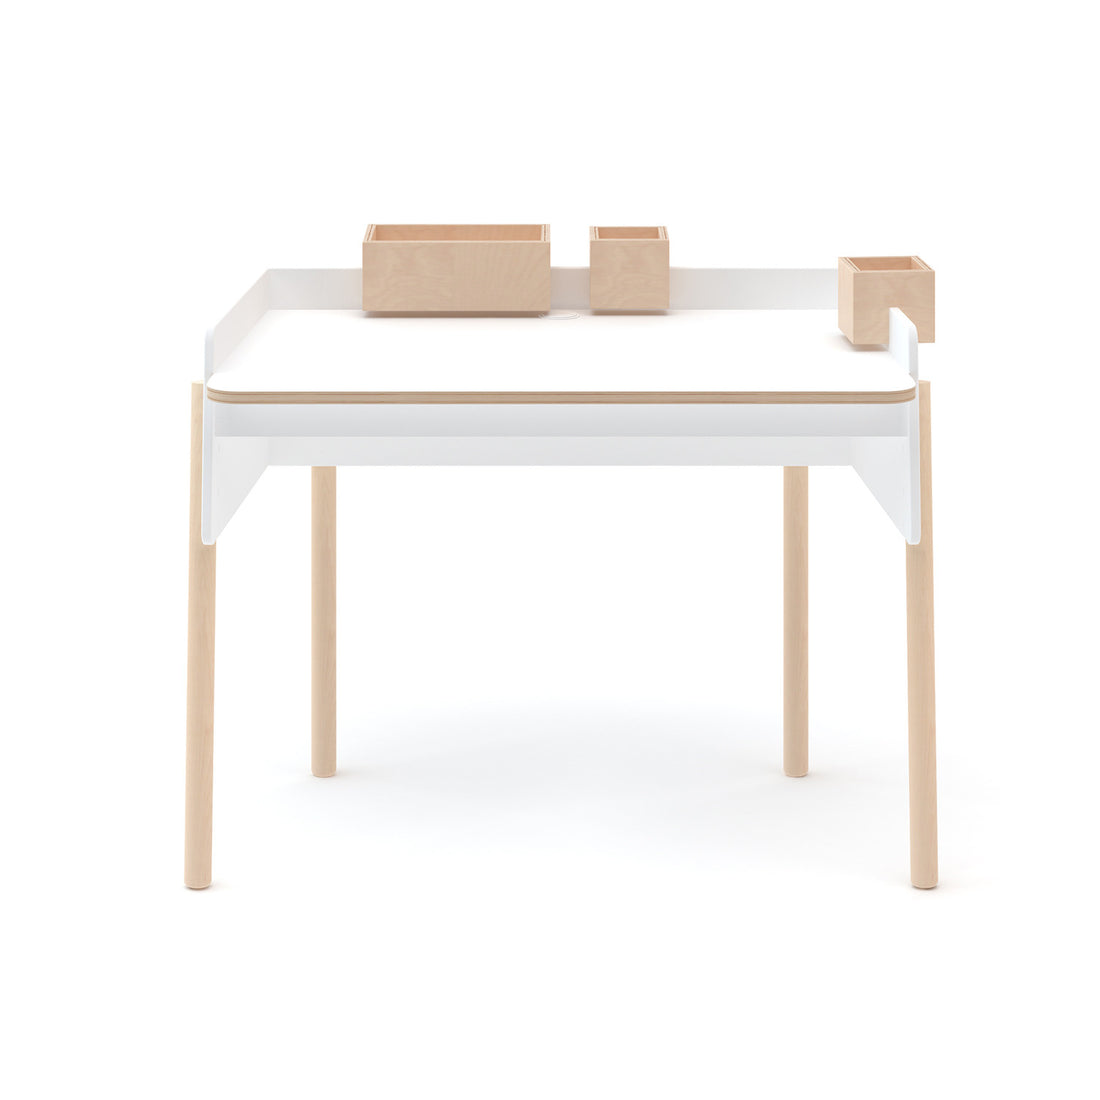 oeuf-brooklyn-desk-furniture-oeuf-1bd01-01